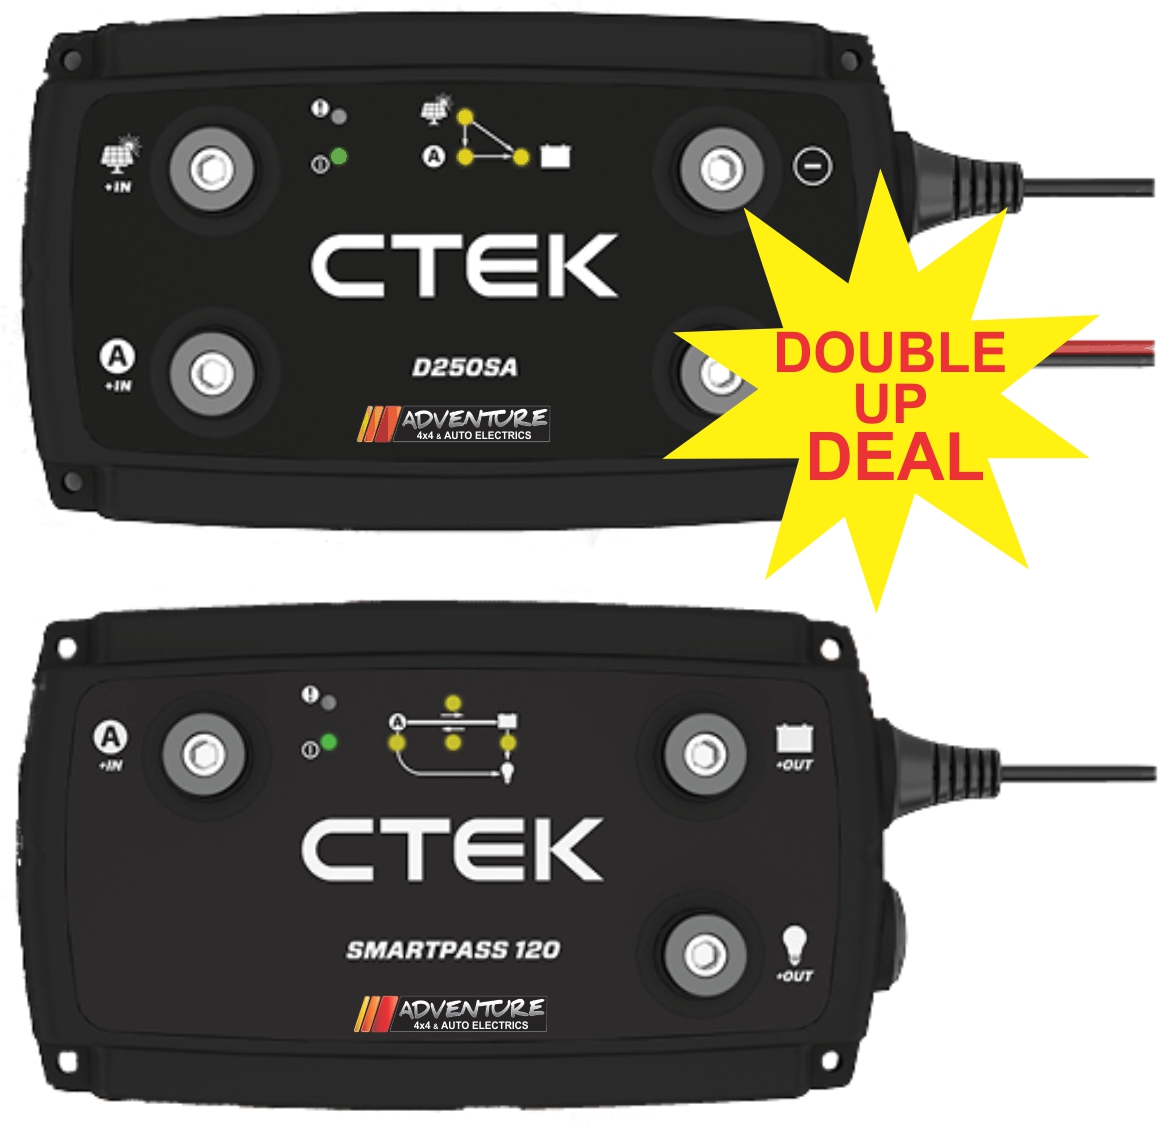 Ctek D250sa & Smartpass 120 Combo